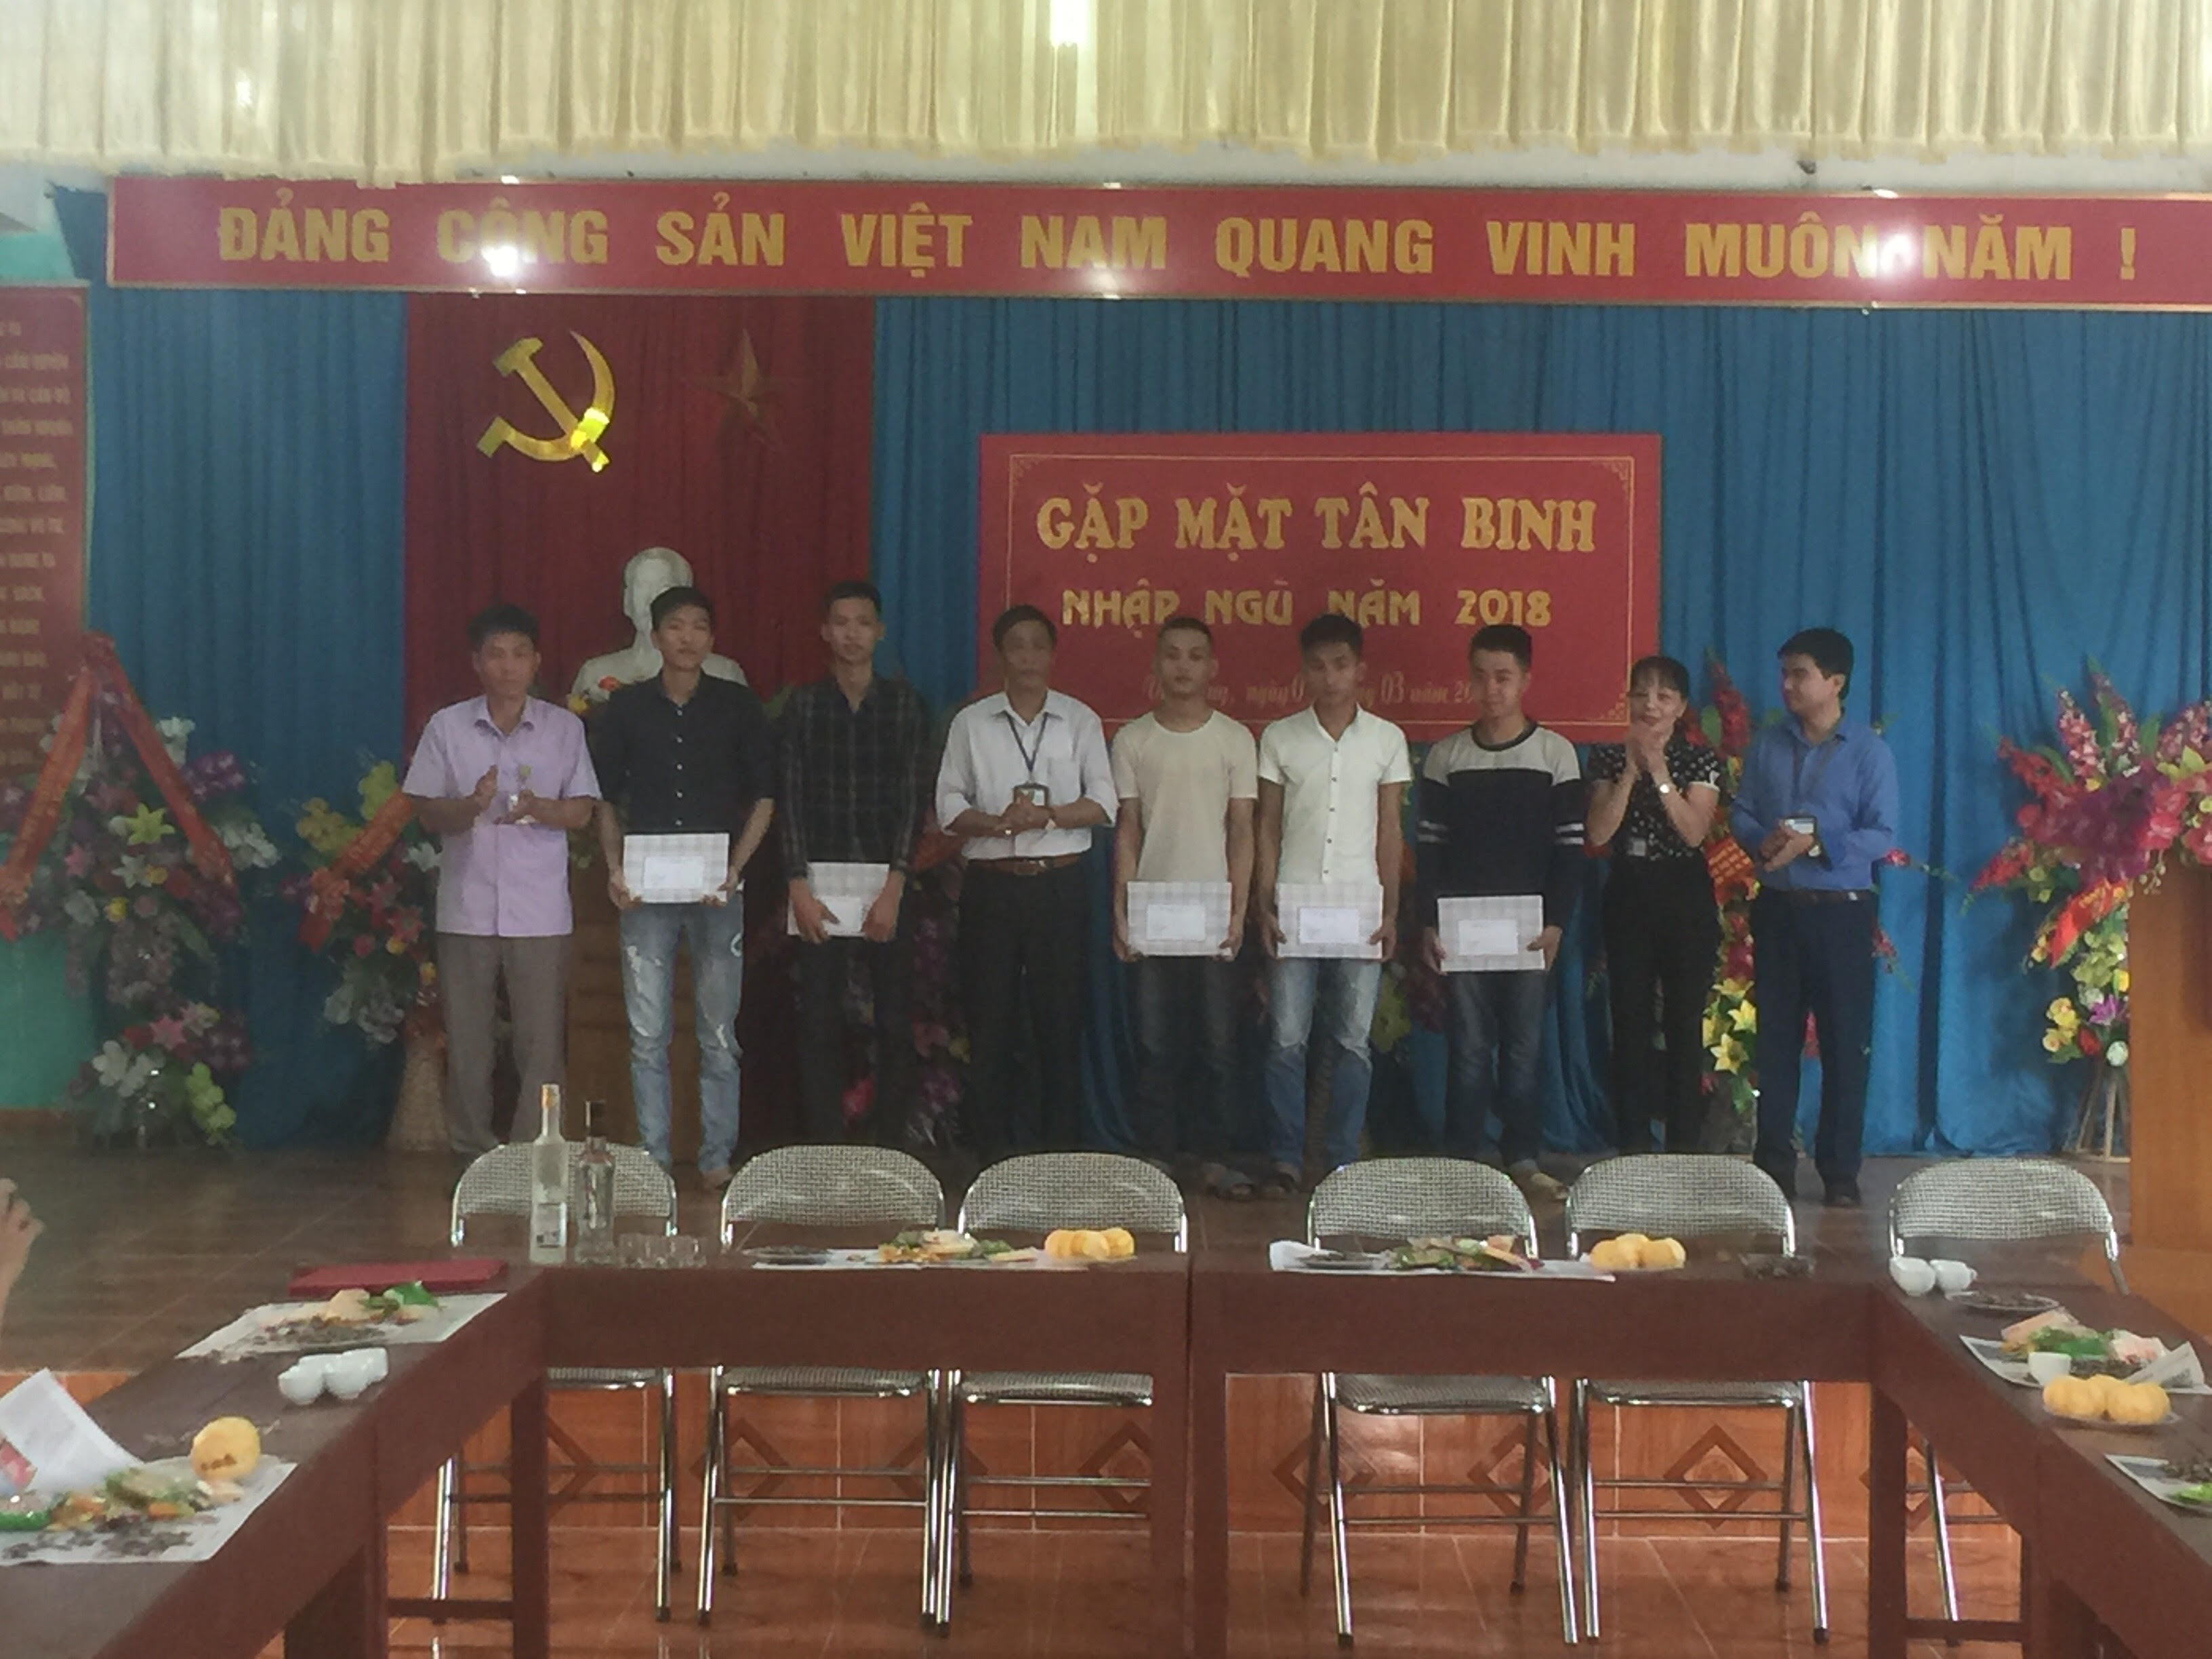 Ủy ban nhân dân thị trấn Vĩnh Tuy Gặp mặt Tân binh lên đường nhập ngũ năm 2018